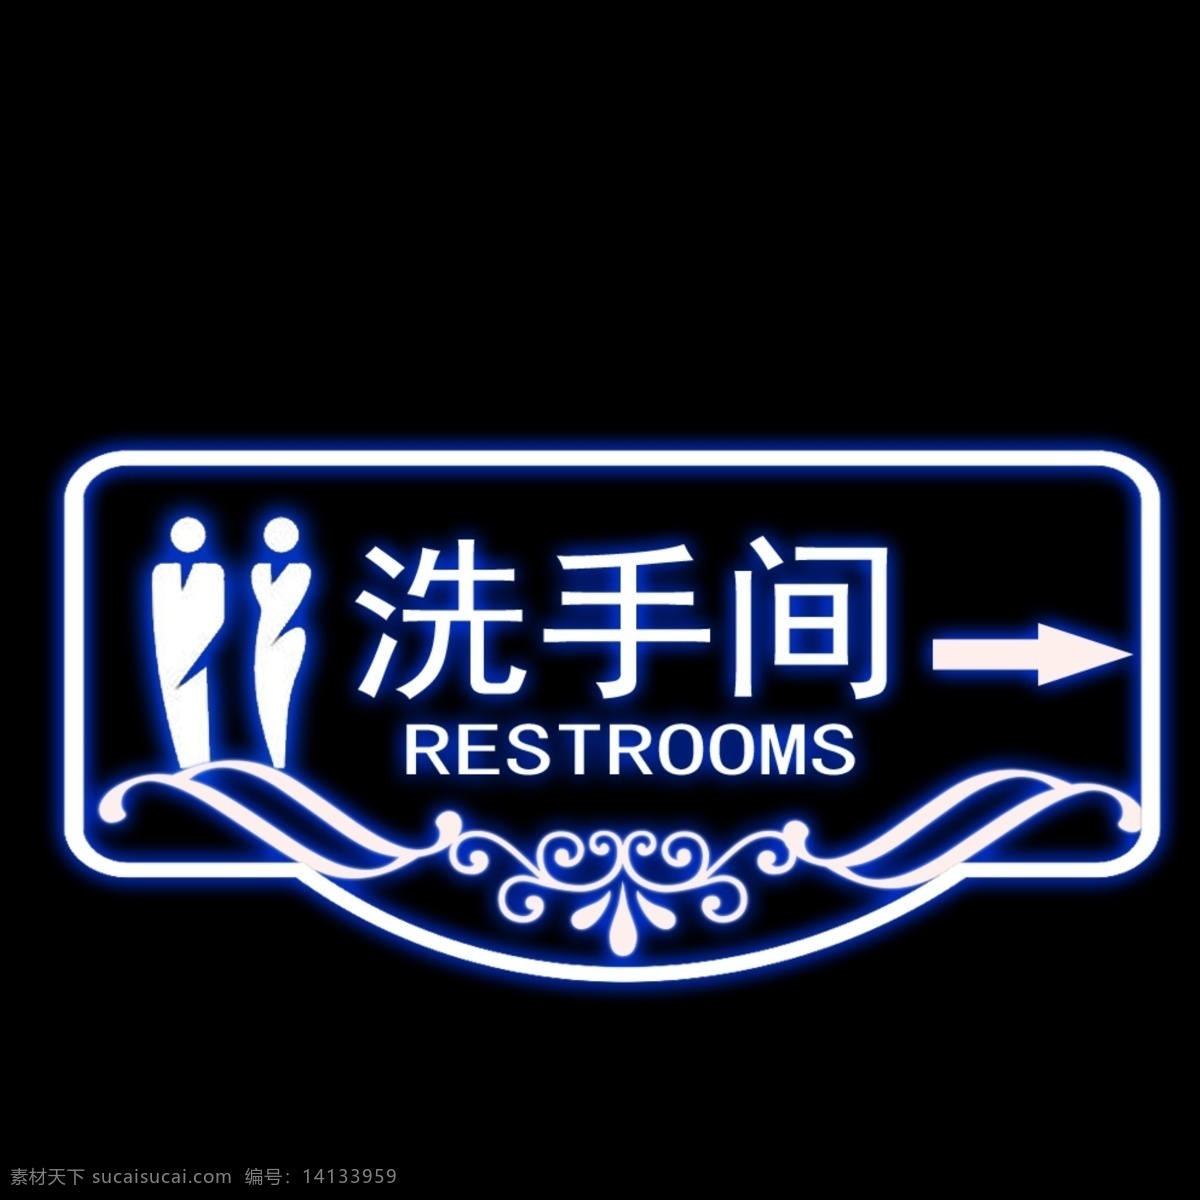 洗手间提示牌 男士女士 洗手间 箭头 指示牌 psd源文件 洗手间指示牌 黑色